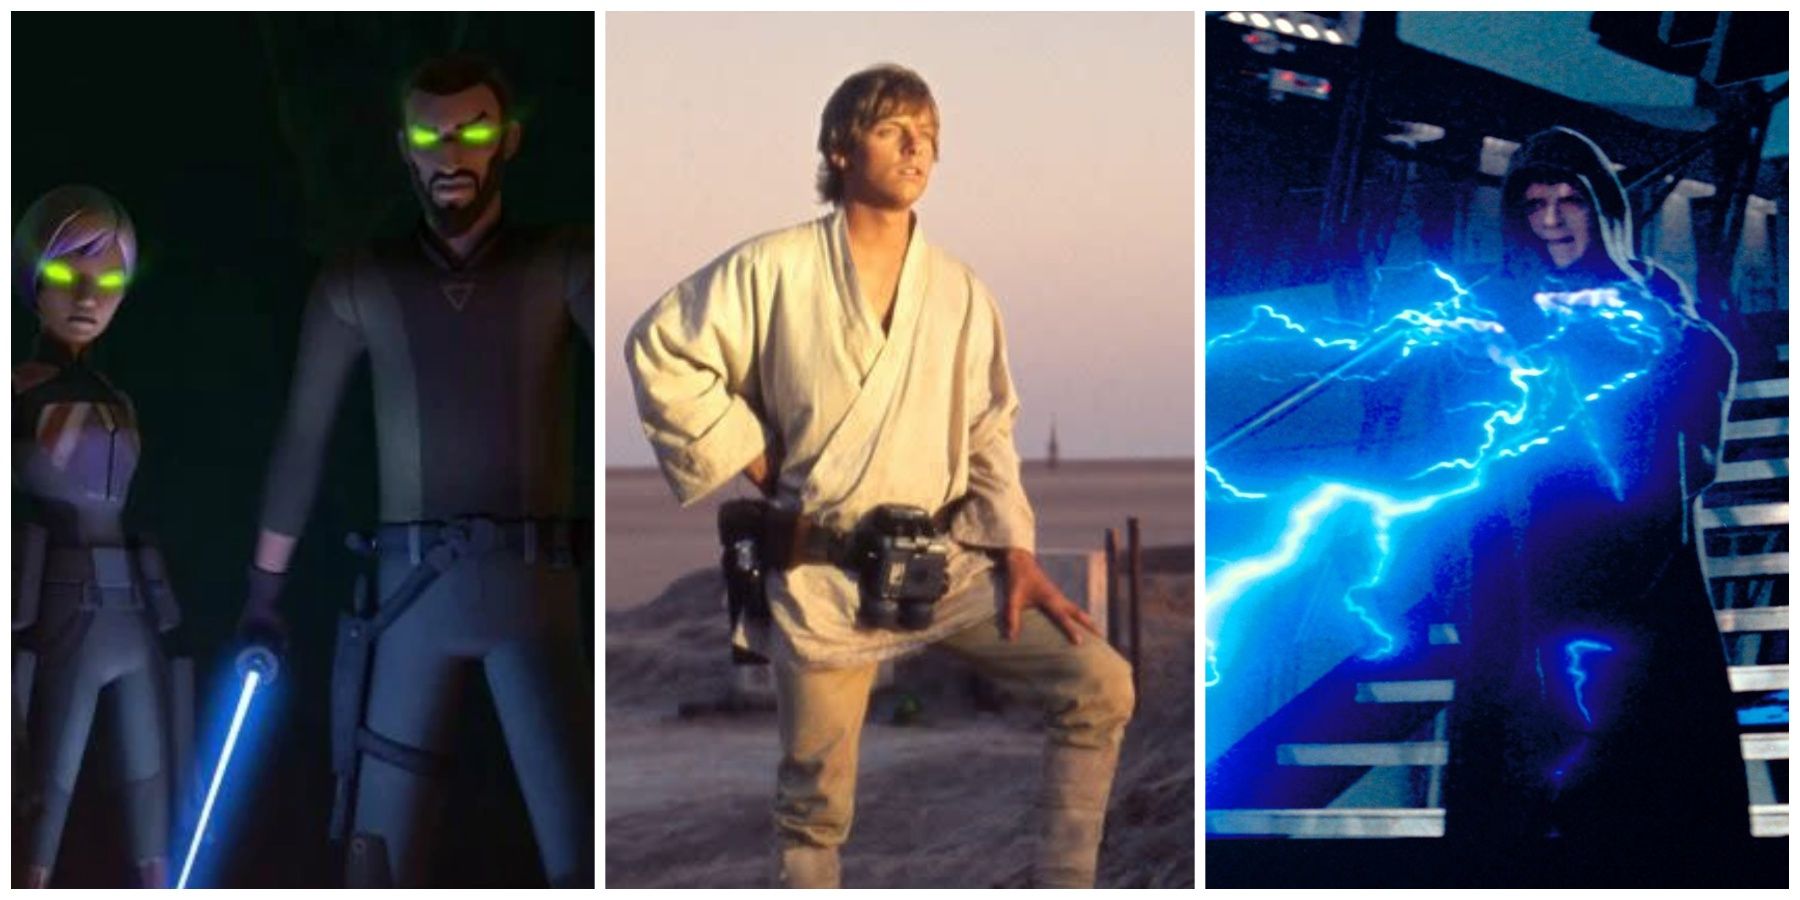 Luke Skywalker & Force Abilities He Cannot Use